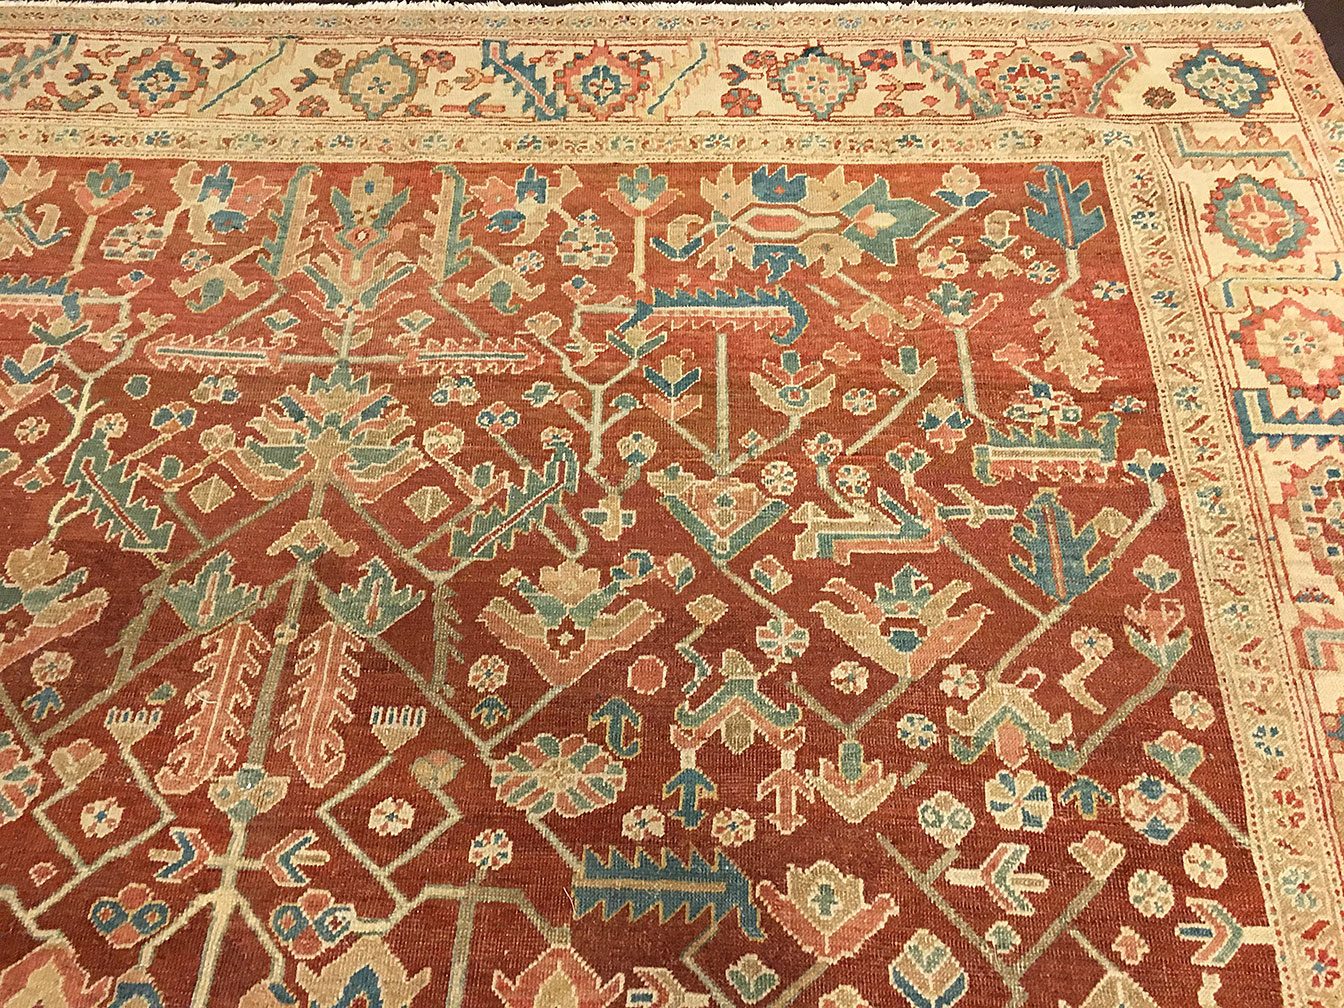 Antique bakshaish Carpet - # 52467